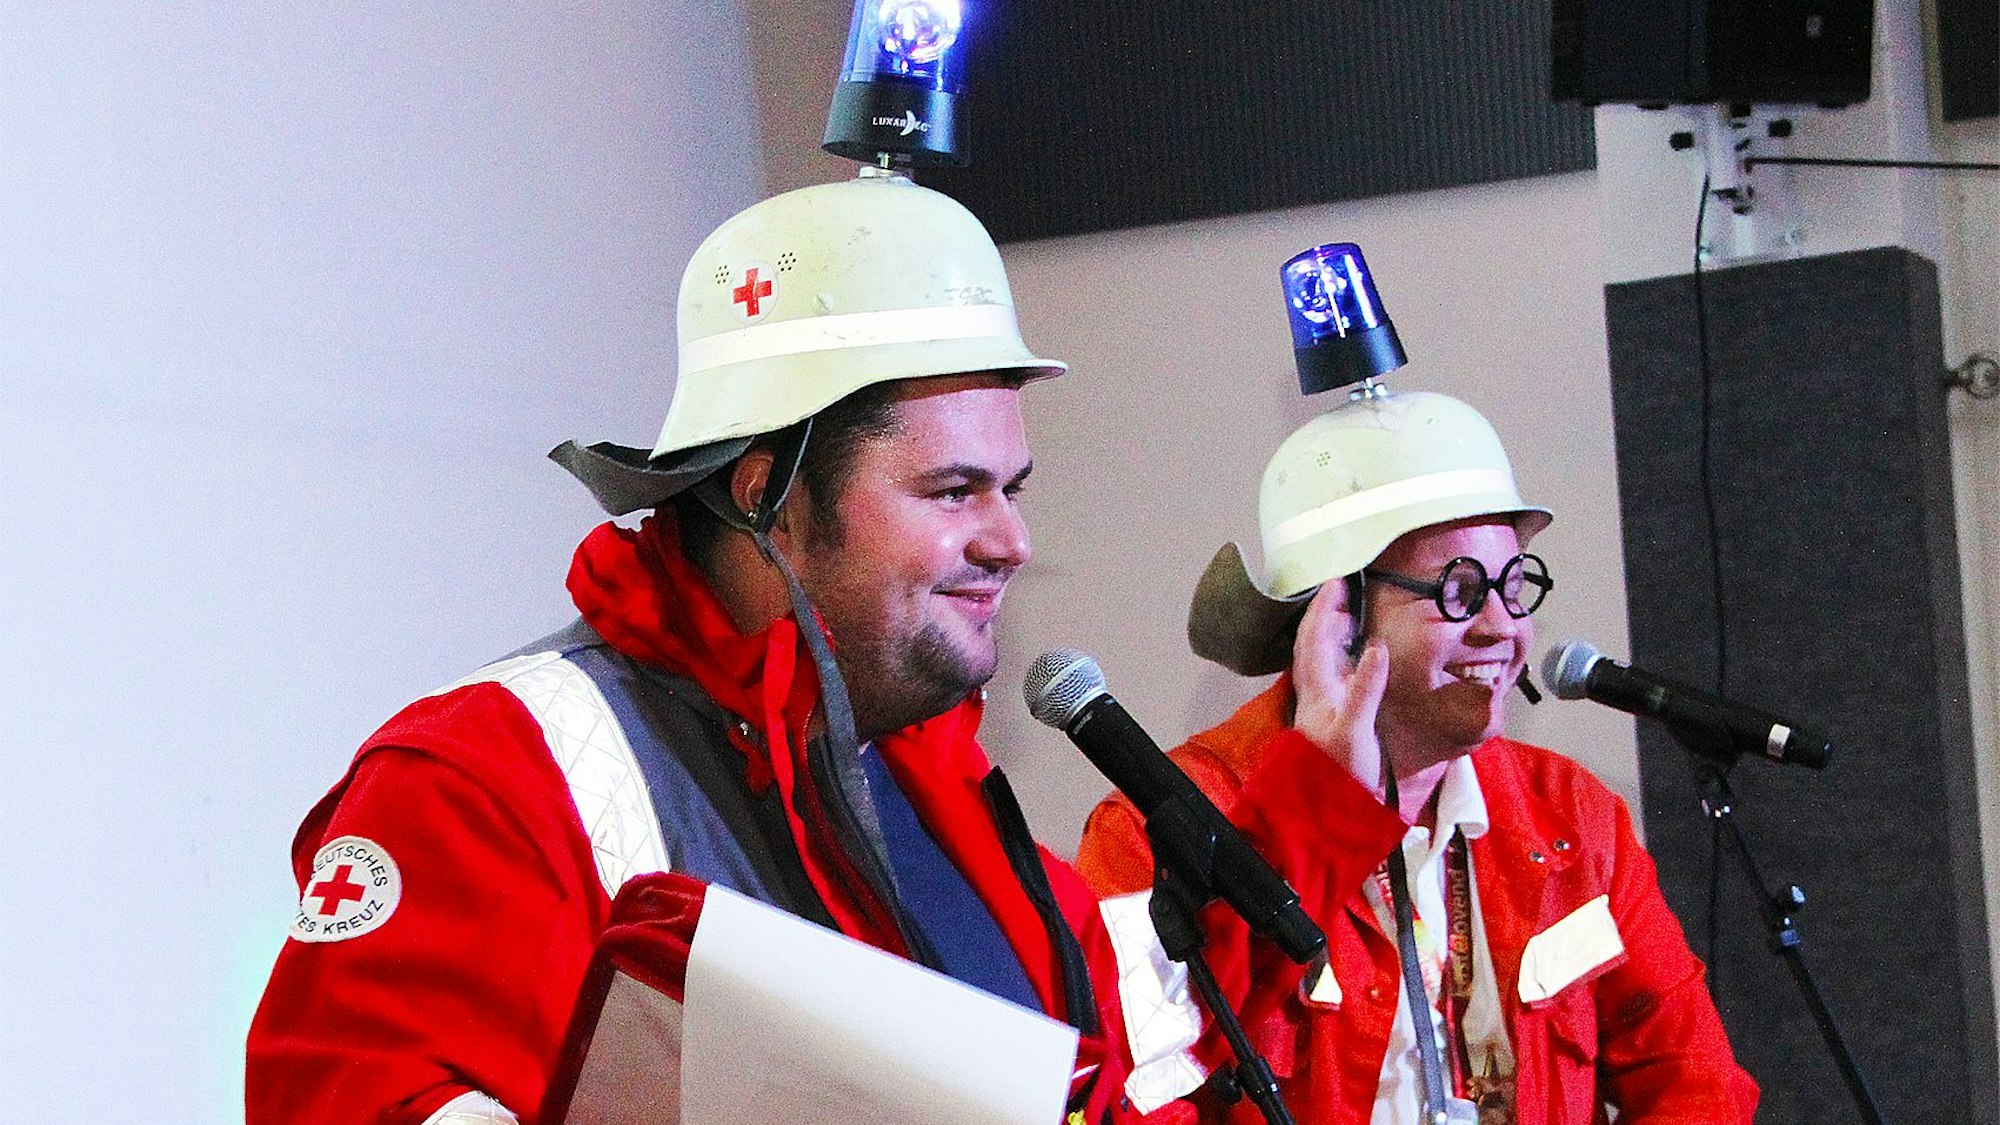 Zwei Büttenredner stehen auf der Bühne vor ihren Mikrofonen. Sie tragen Helme, die mit Blaulichtlampen versehen sind, und rote Monturen.